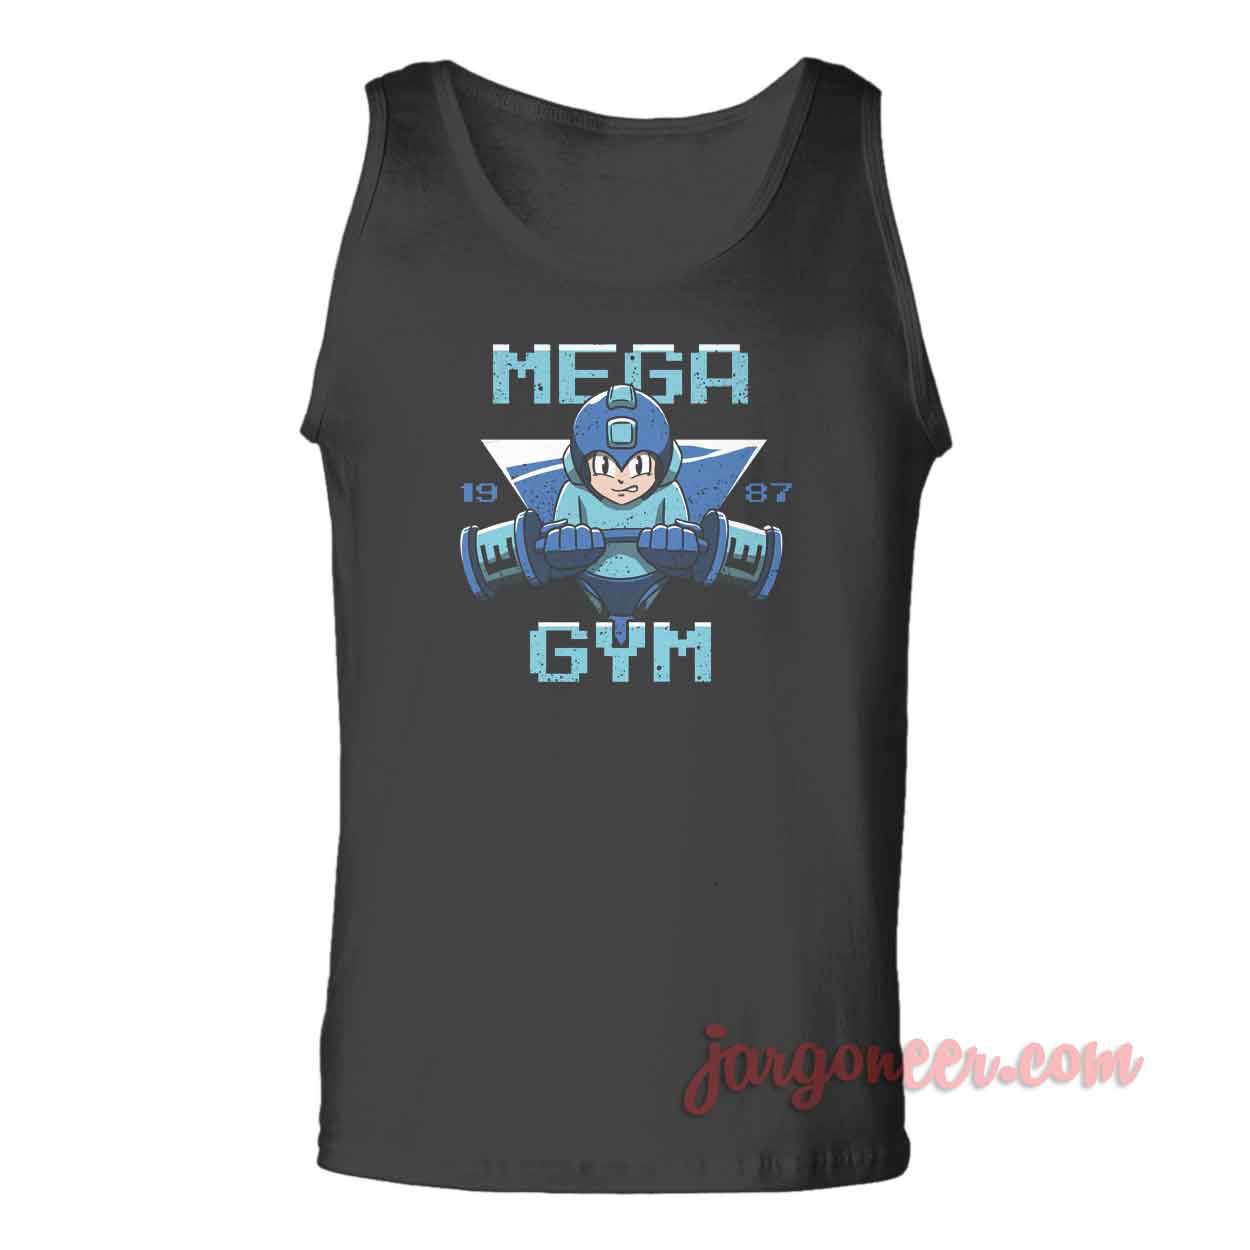 Mega Gym 1987 - Shop Unique Graphic Cool Shirt Designs